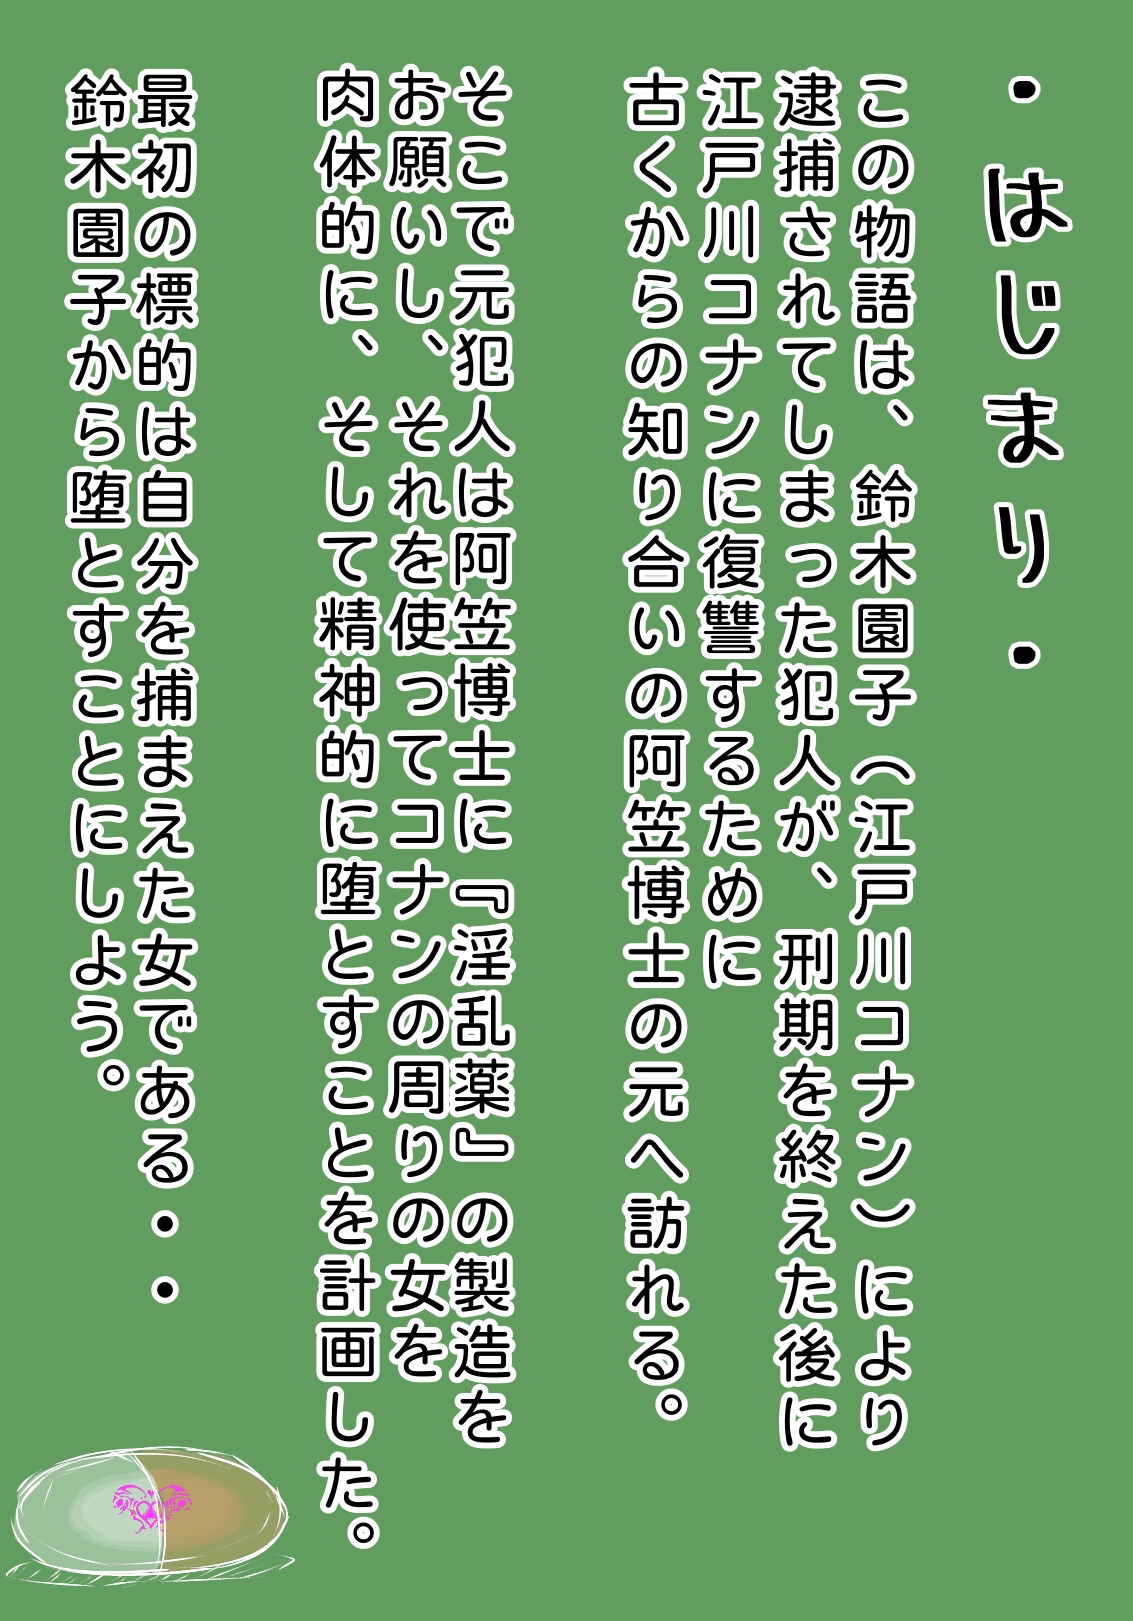 [ようへい♪] コナンNTRシリーズ No.1 (名探偵コナン)